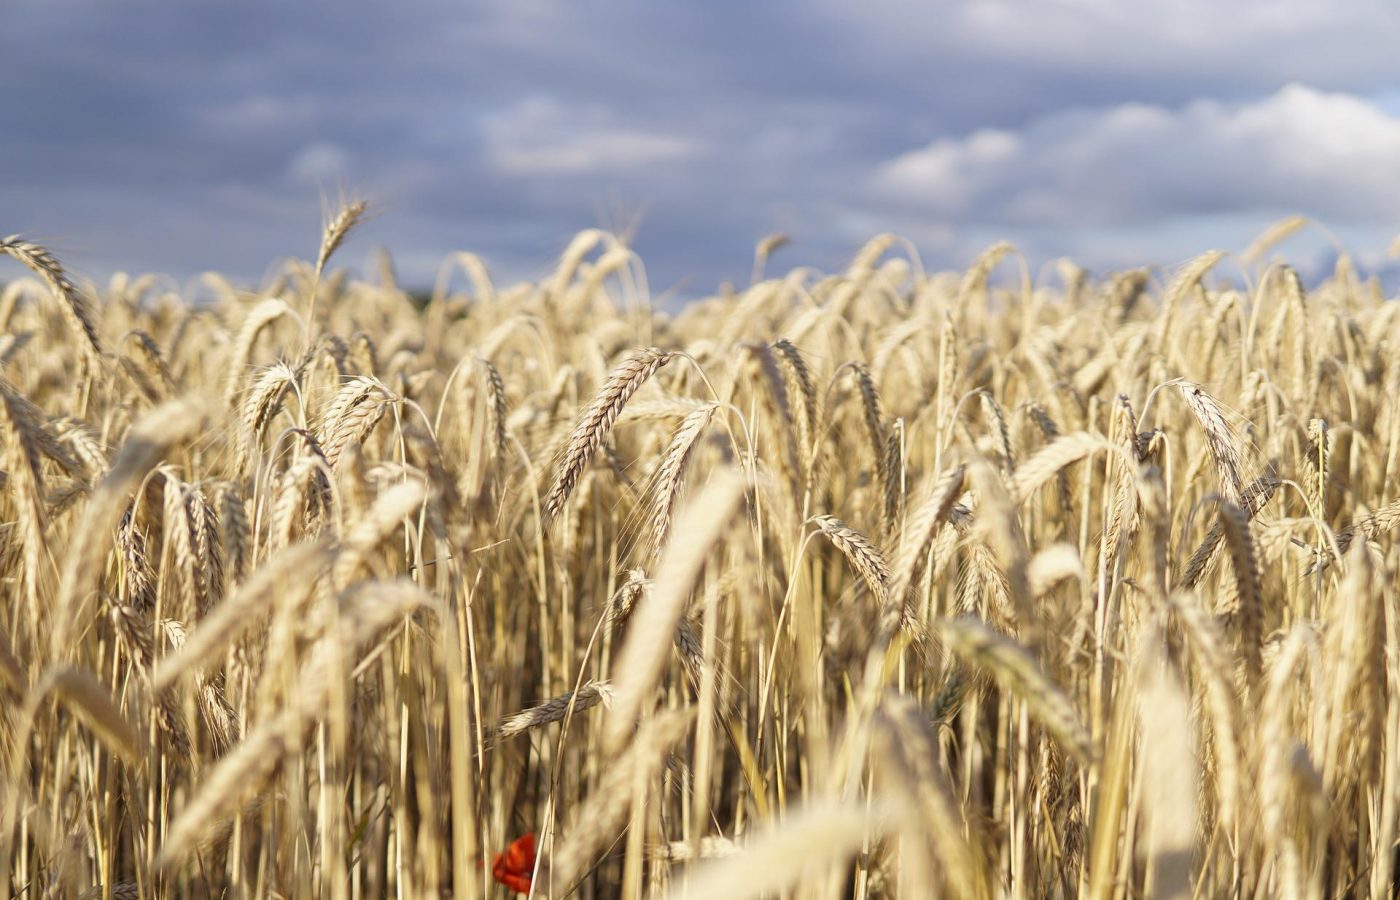 wheat-field-gde4c184ab_1920